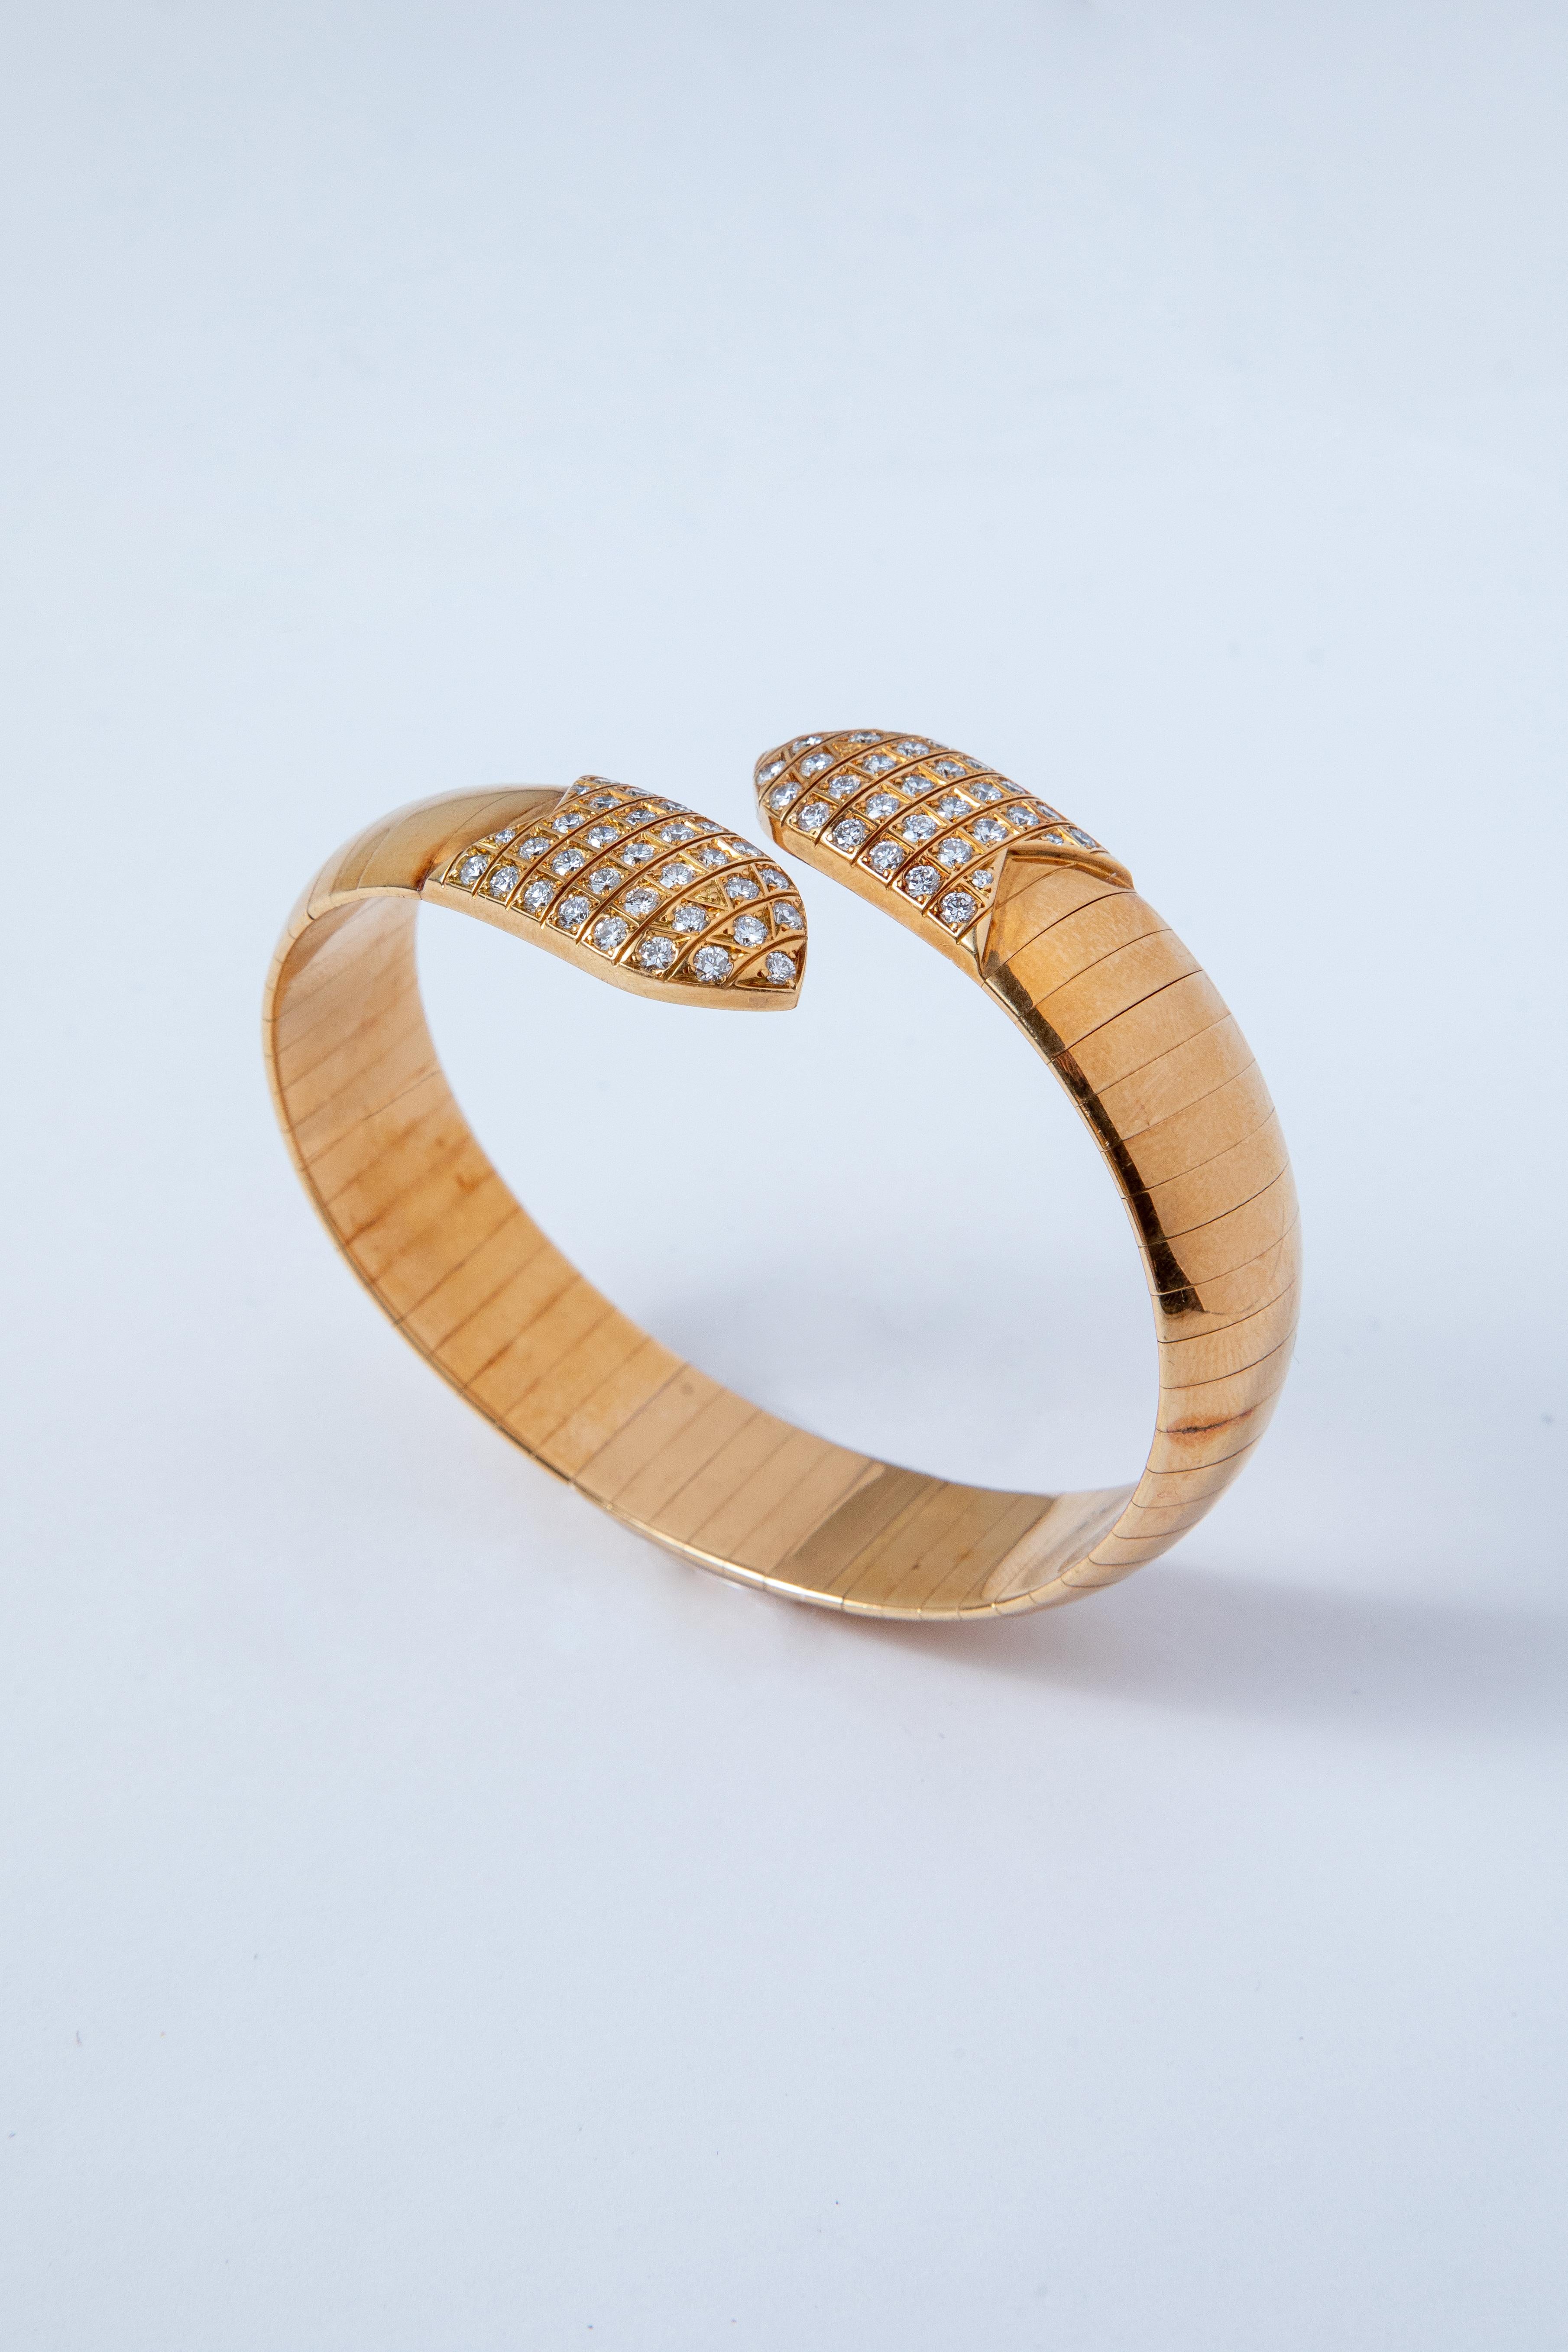 Chaumet Armband und Ring aus 18 Karat Gelbgold, an beiden Enden mit einem Gitter aus Diamanten im Brillantschliff besetzt

Signiert Chaumet Paris und nummeriert

Umfang des Handgelenks: 17.5 cm
Ringgröße: 5 